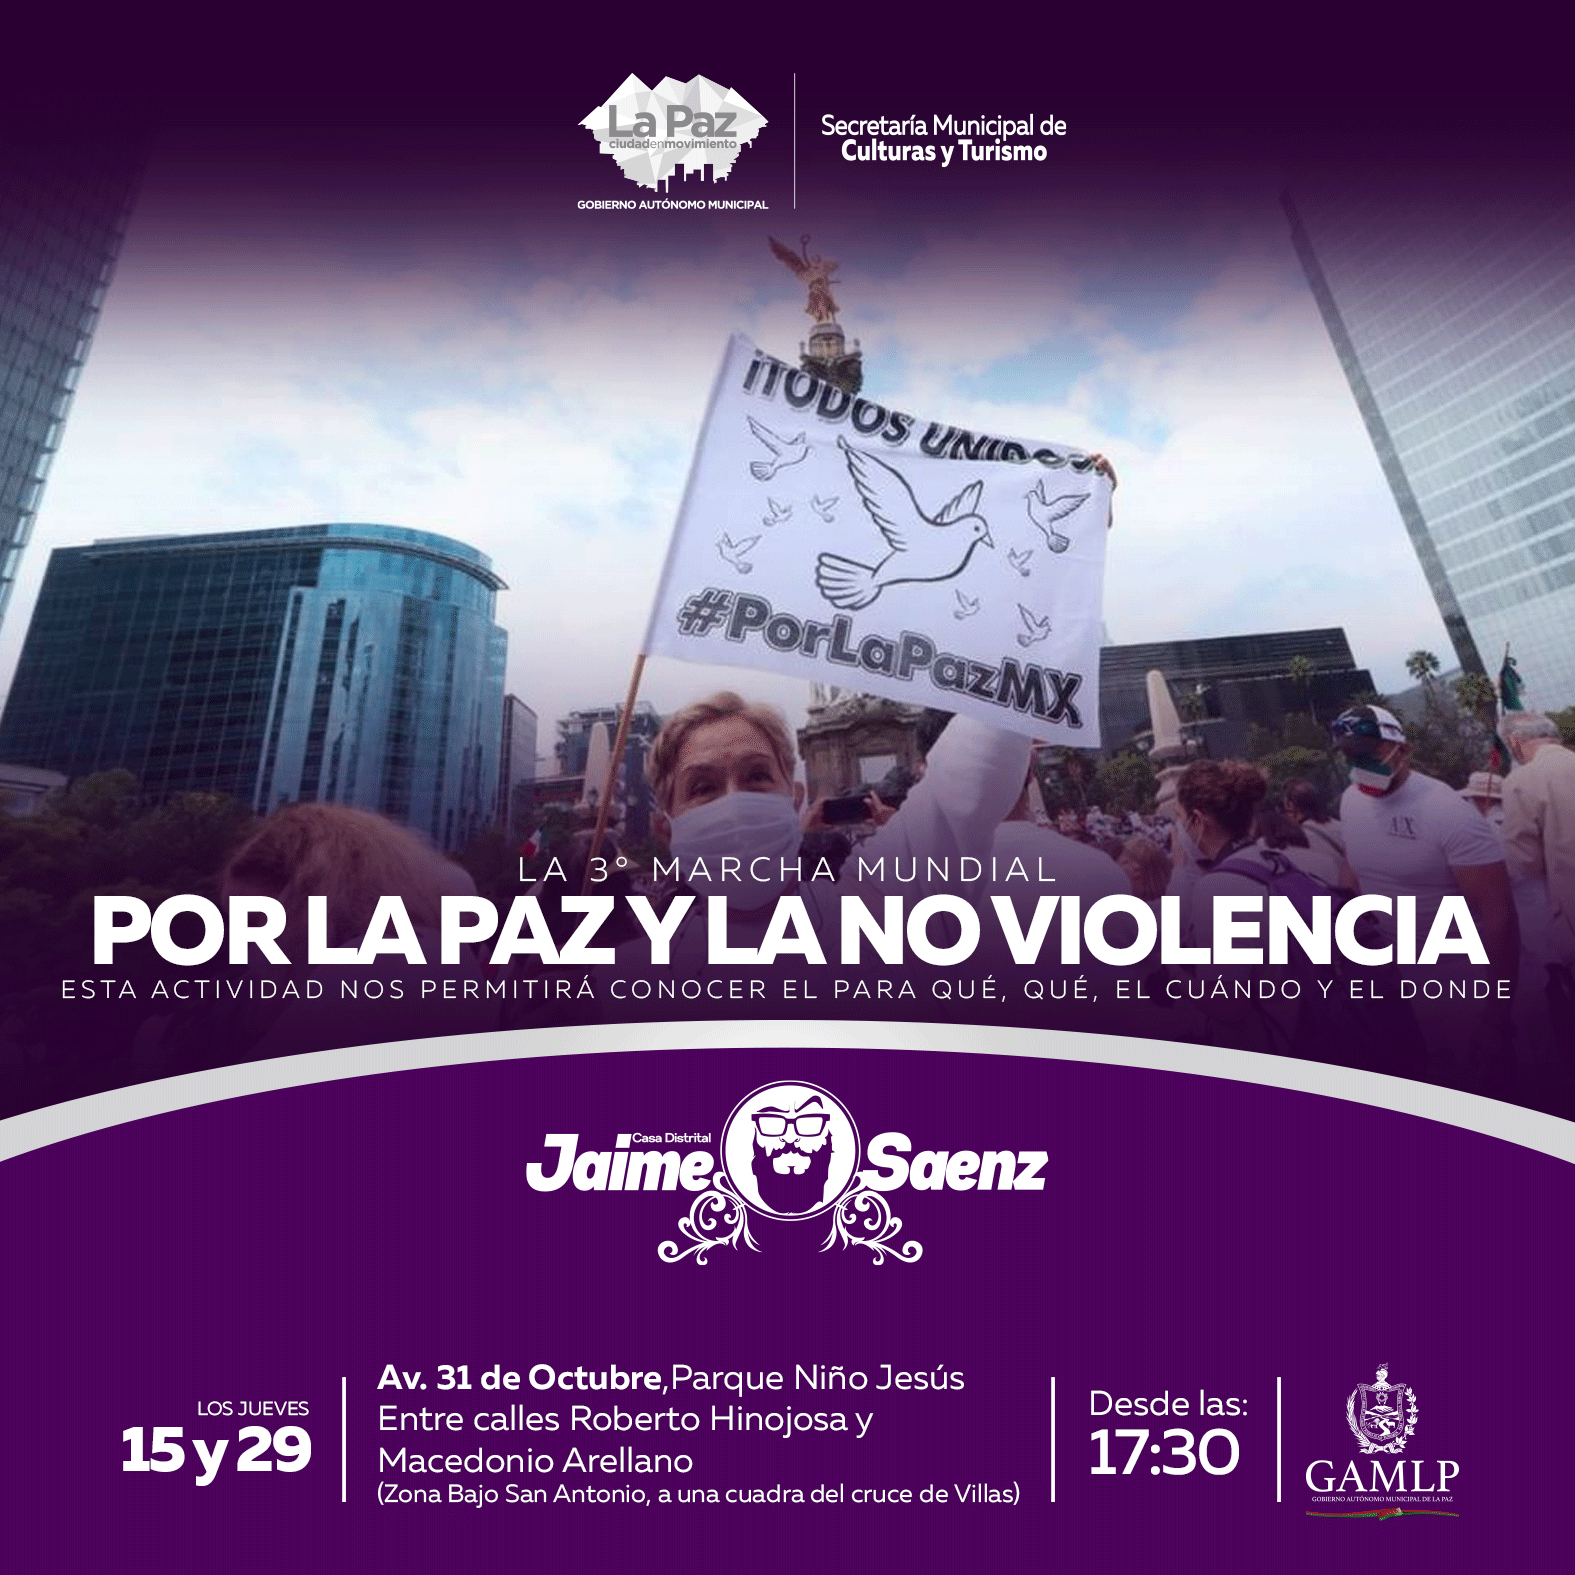 La 3° marcha mundial por la paz y la no violencia